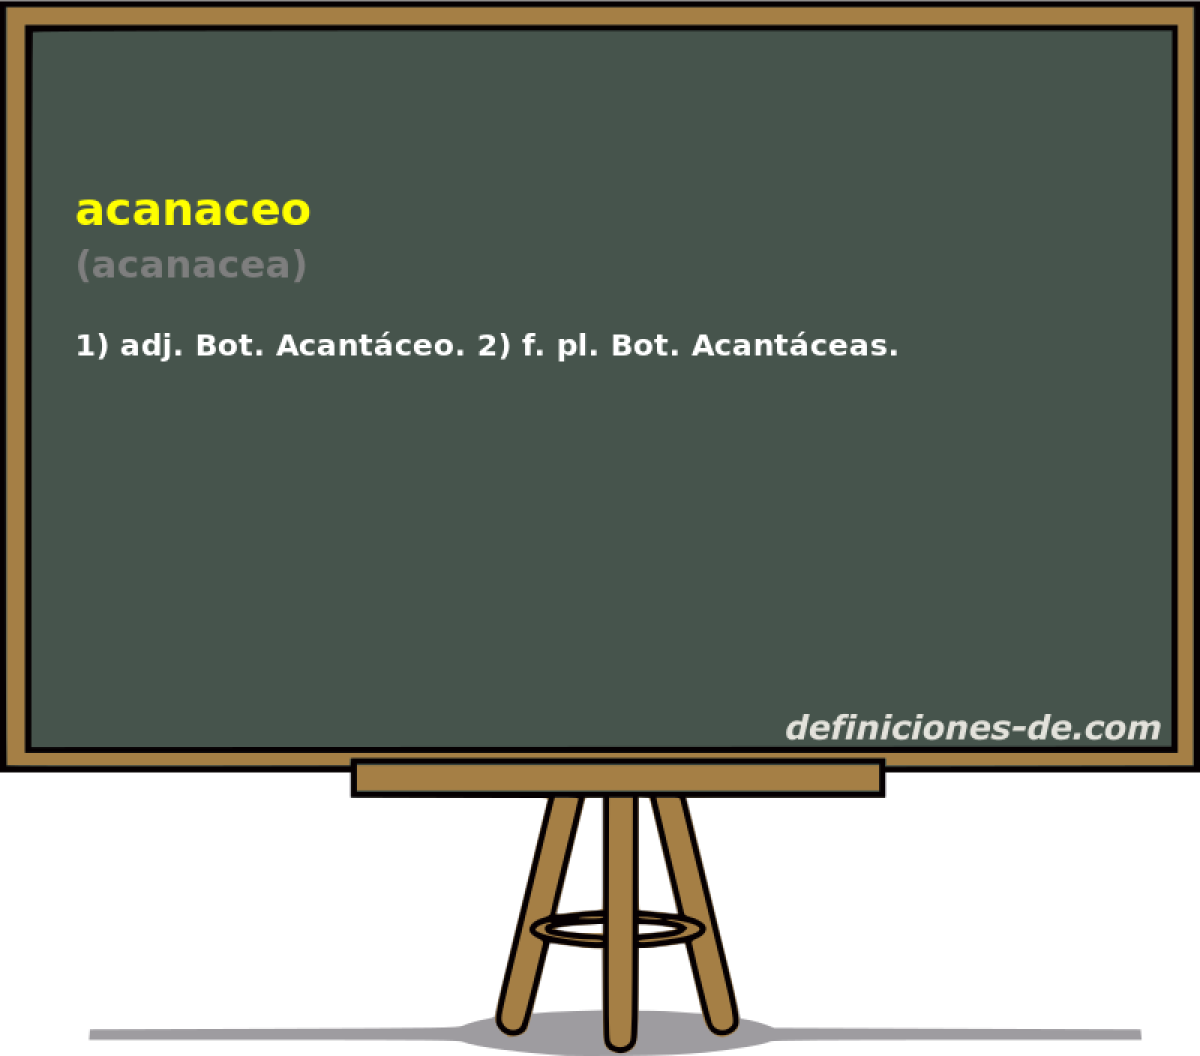 acanaceo (acanacea)